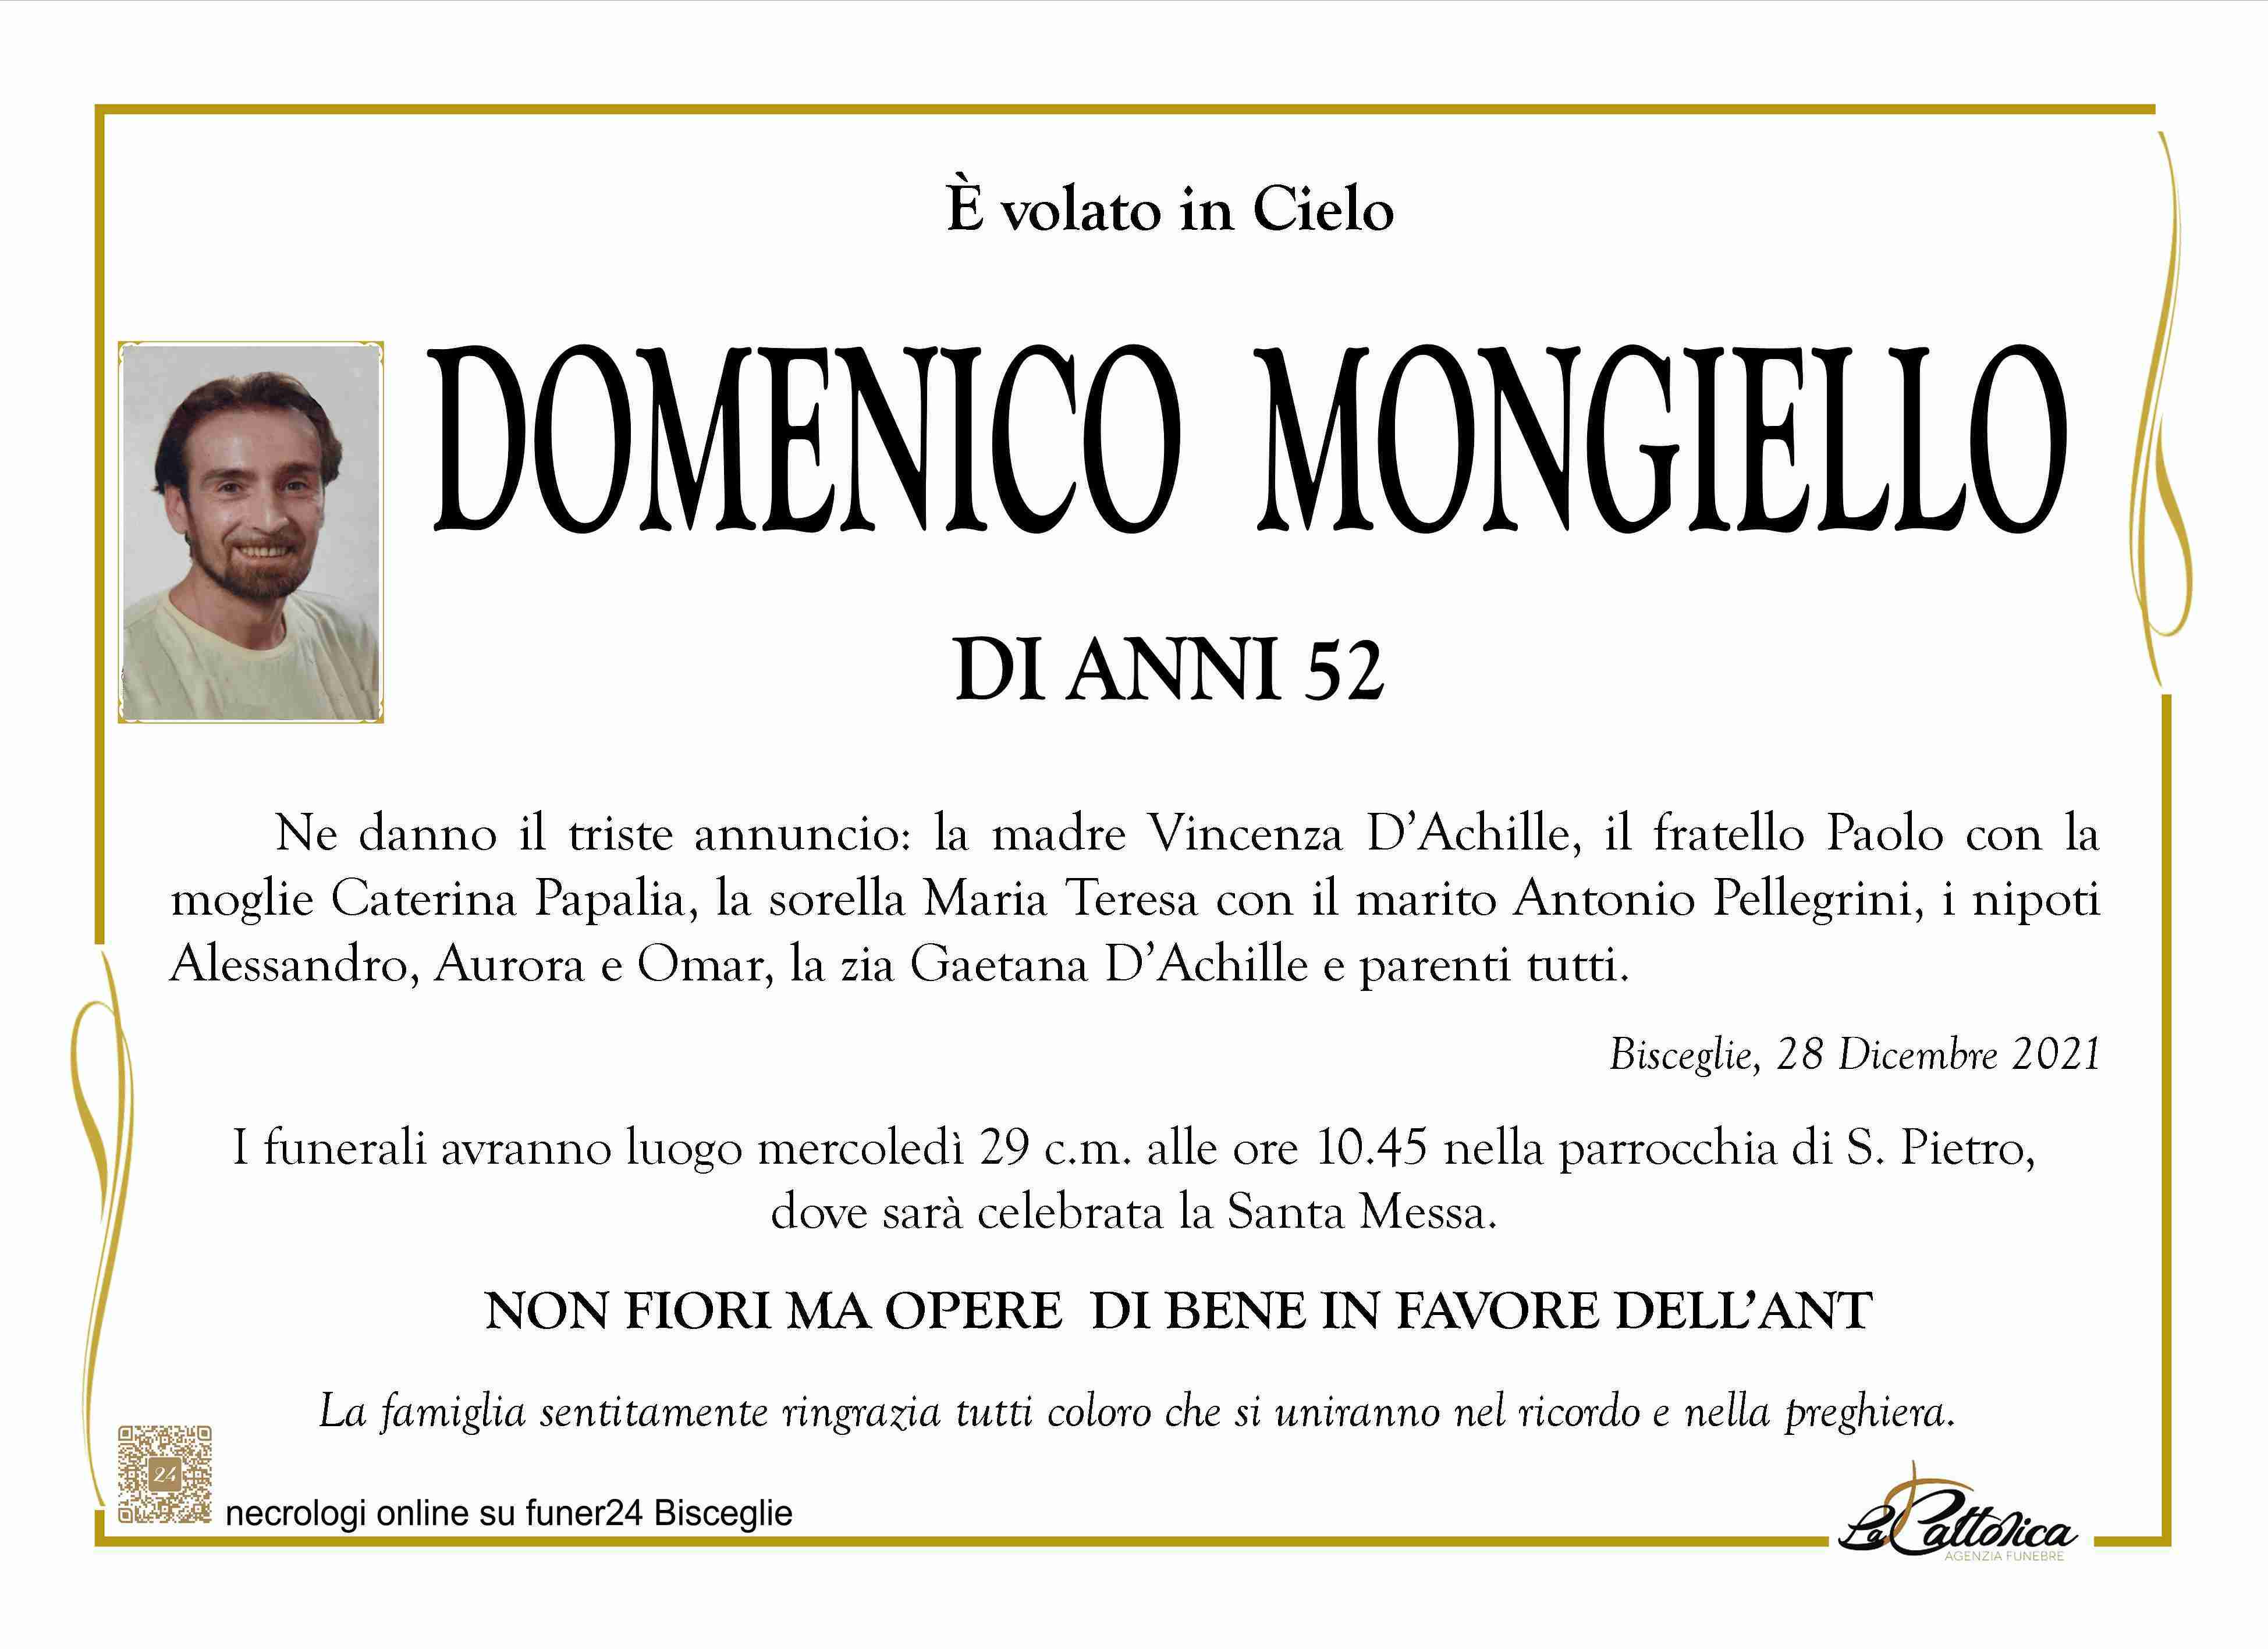 Domenico Mongiello